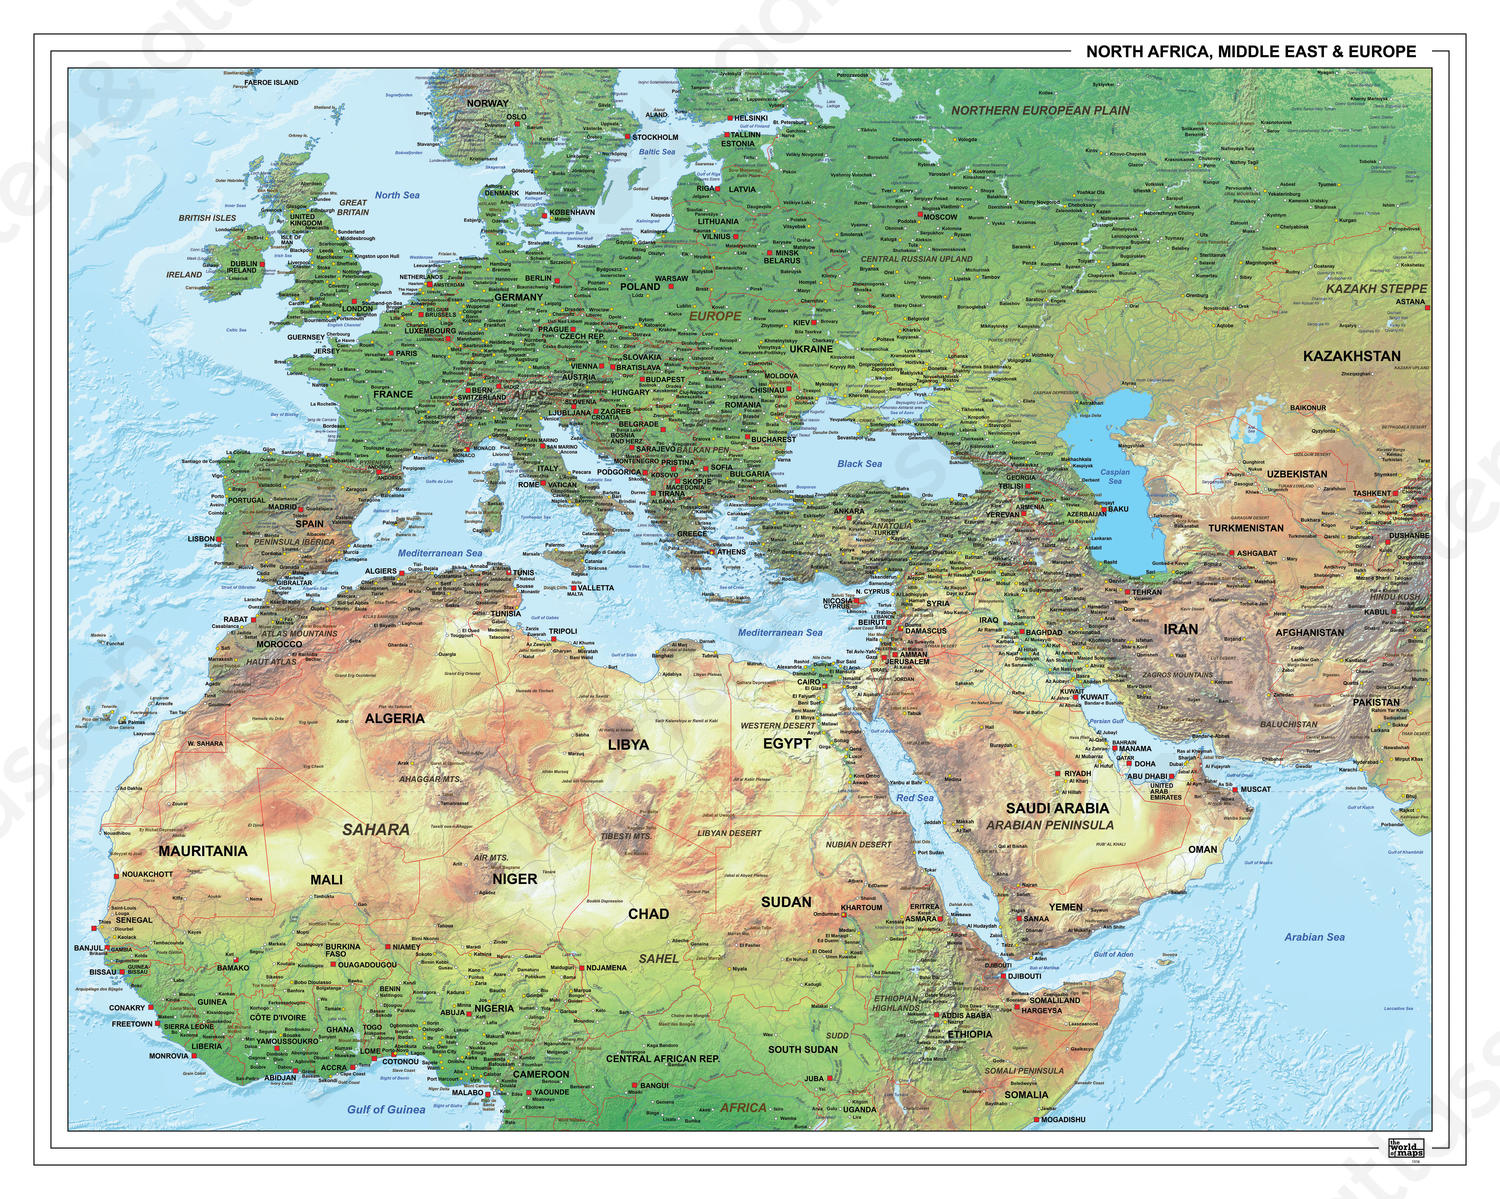 Europa Afrika Midden-Oosten Natuurkundige Kaart 1316 | Kaarten En  Atlassen.Nl